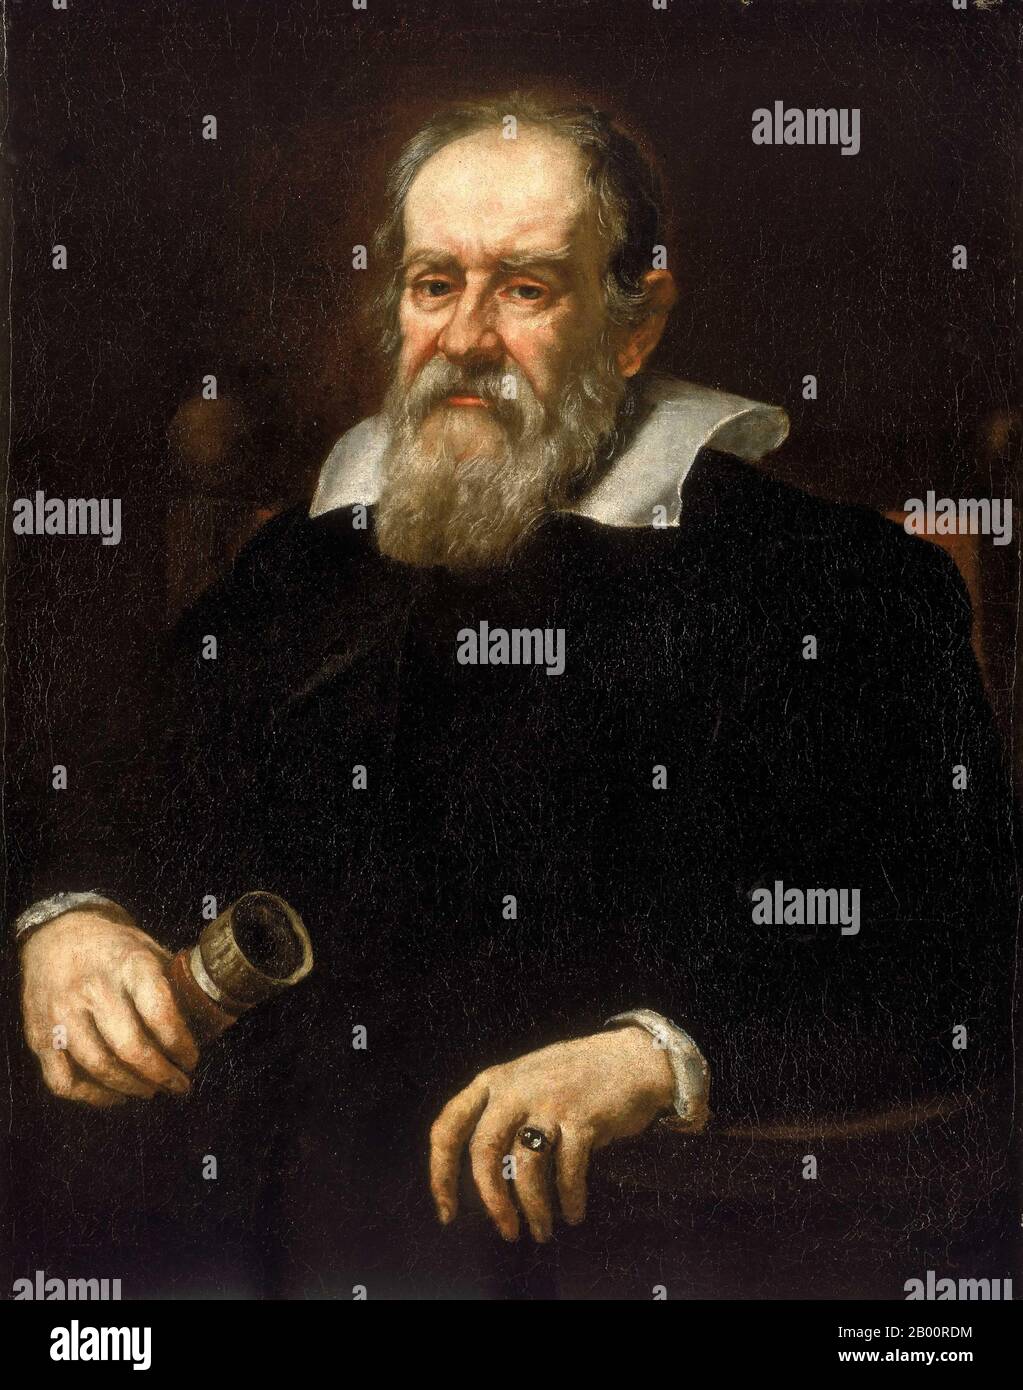 Italia: Ritratto di Galileo Galilei (1564-1642). Olio su tela dipinto di Justus Sustermans (1597-1681), c.. Galileo Galilei Galileo Galilei (15 febbraio 1564 – 8 gennaio 1642) è stato un fisico, matematico, filosofo e astronomo italiano, che ha svolto un ruolo fondamentale nel fondare la scienza moderna in un momento in cui la contraddizione della religione era considerata eresia. 1640 Era come astronomo che era più controverso. Galileo sviluppò telescopi che confermavano le fasi di Venere, e la scoperta dei quattro satelliti più grandi di Giove (chiamati in suo onore le lune galileiane), così come dei punti solari. Foto Stock